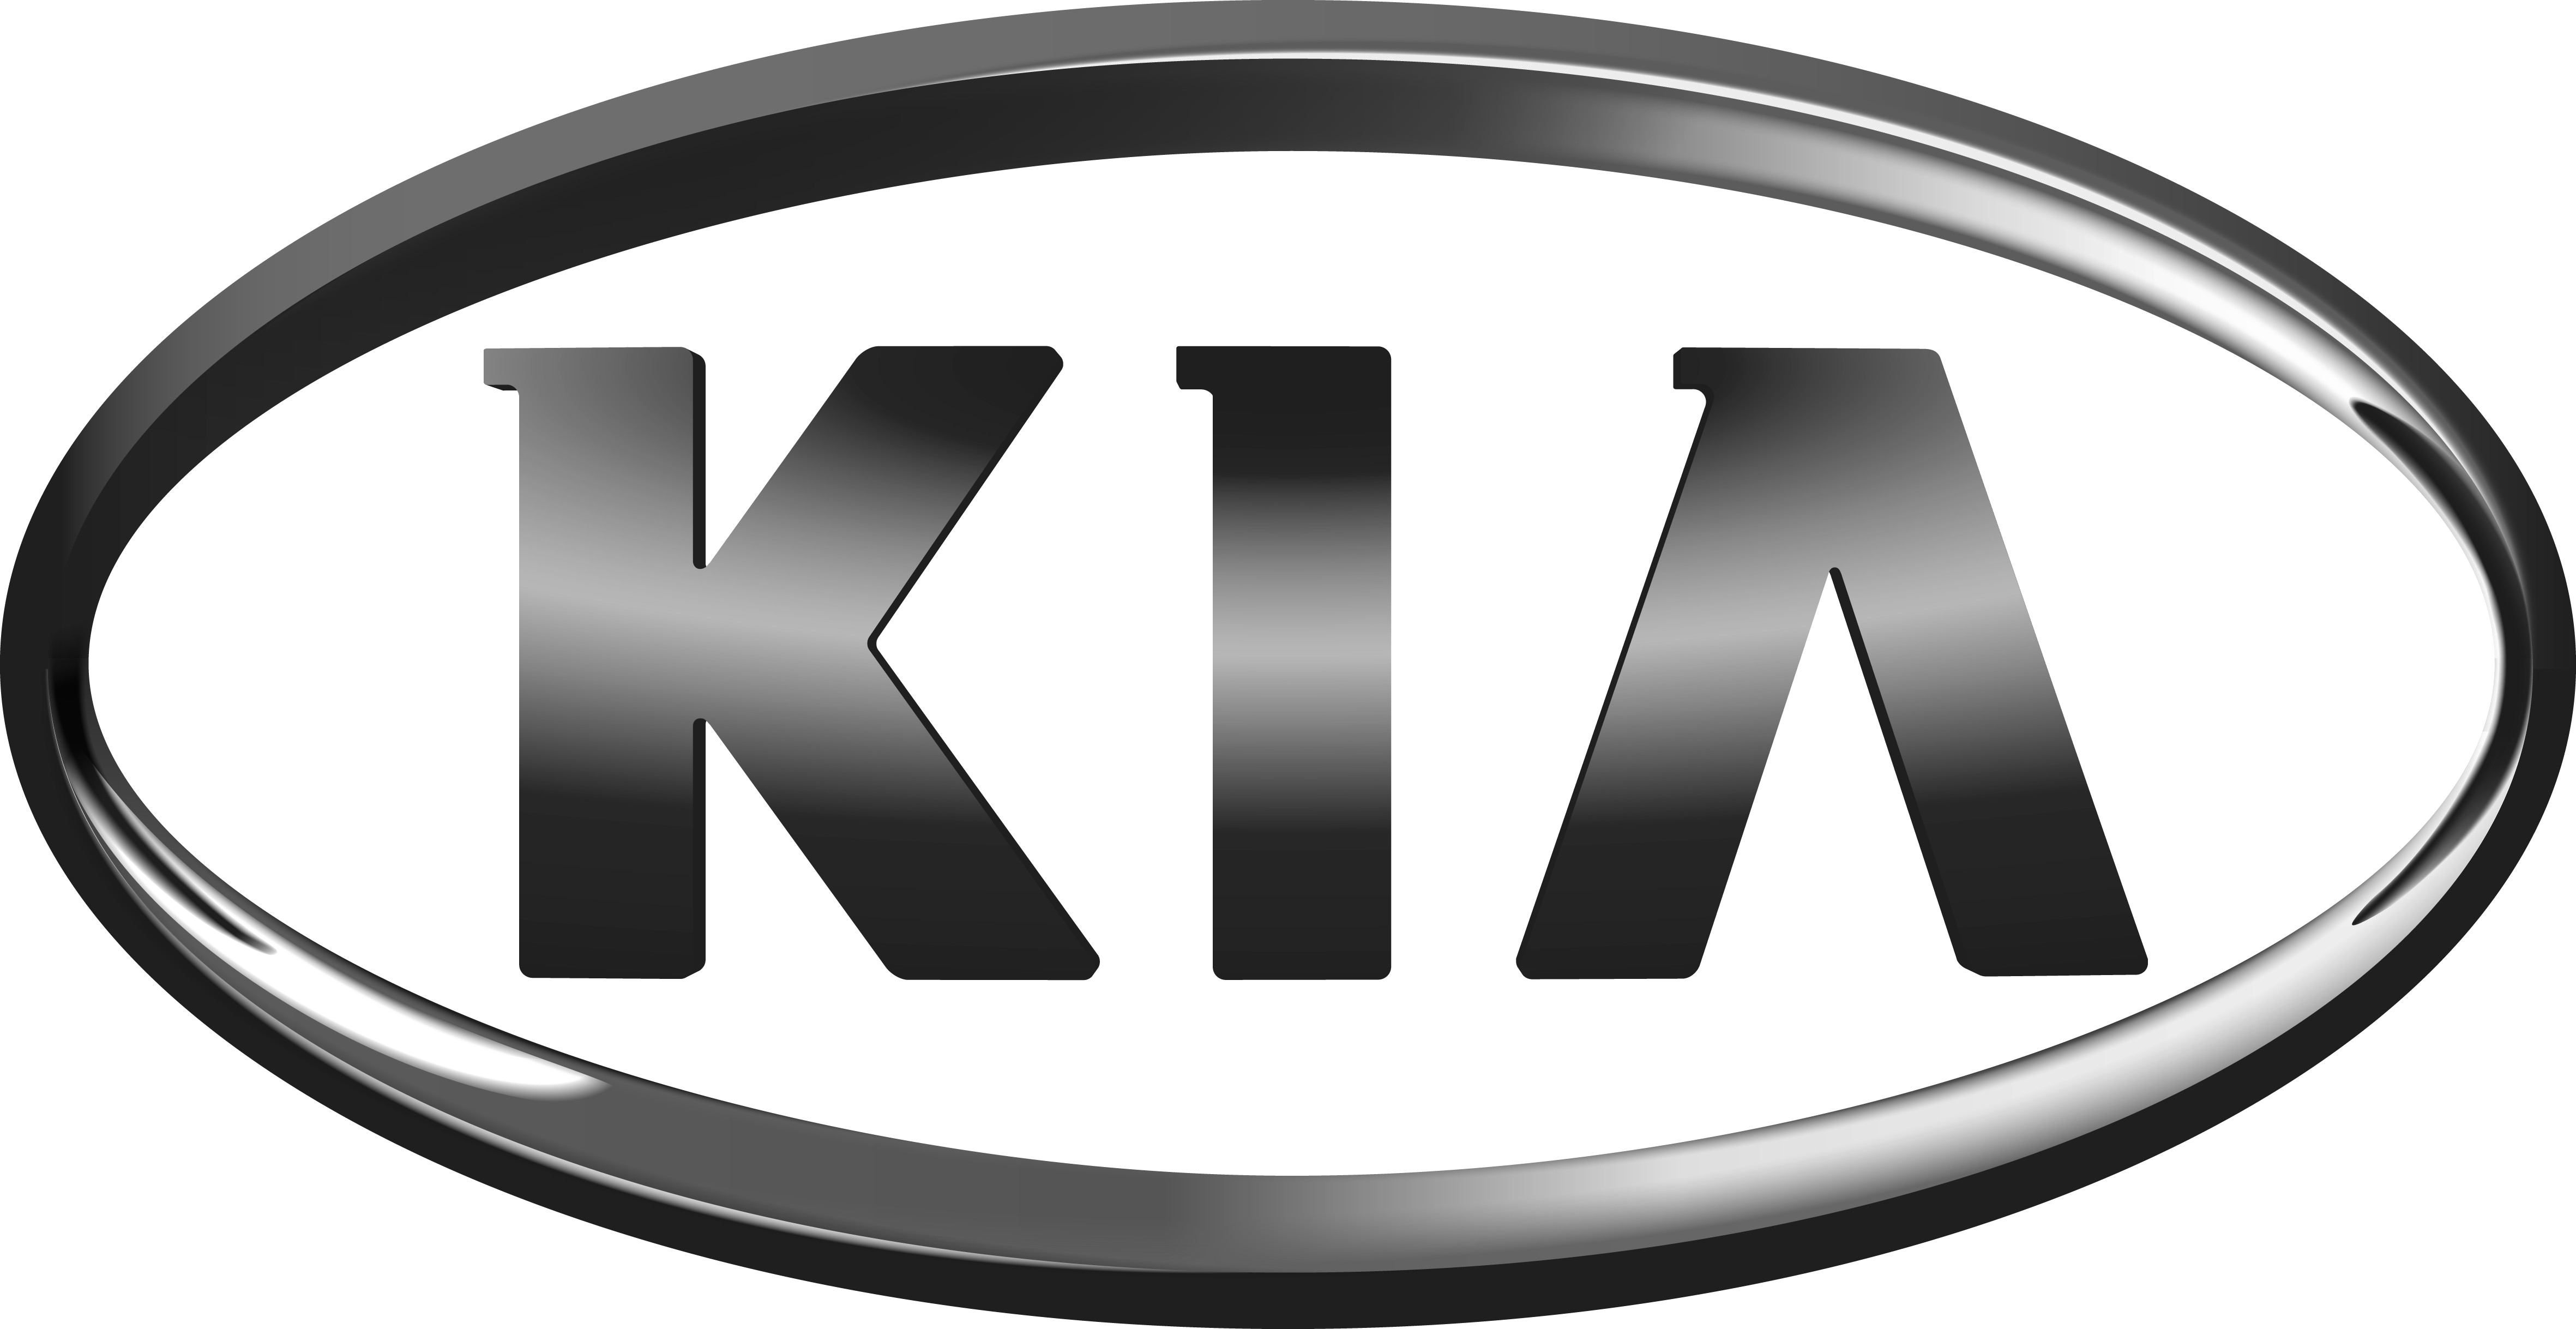 Kia Vector Logo Png Transparent Kia Vector Logo Png I - vrogue.co